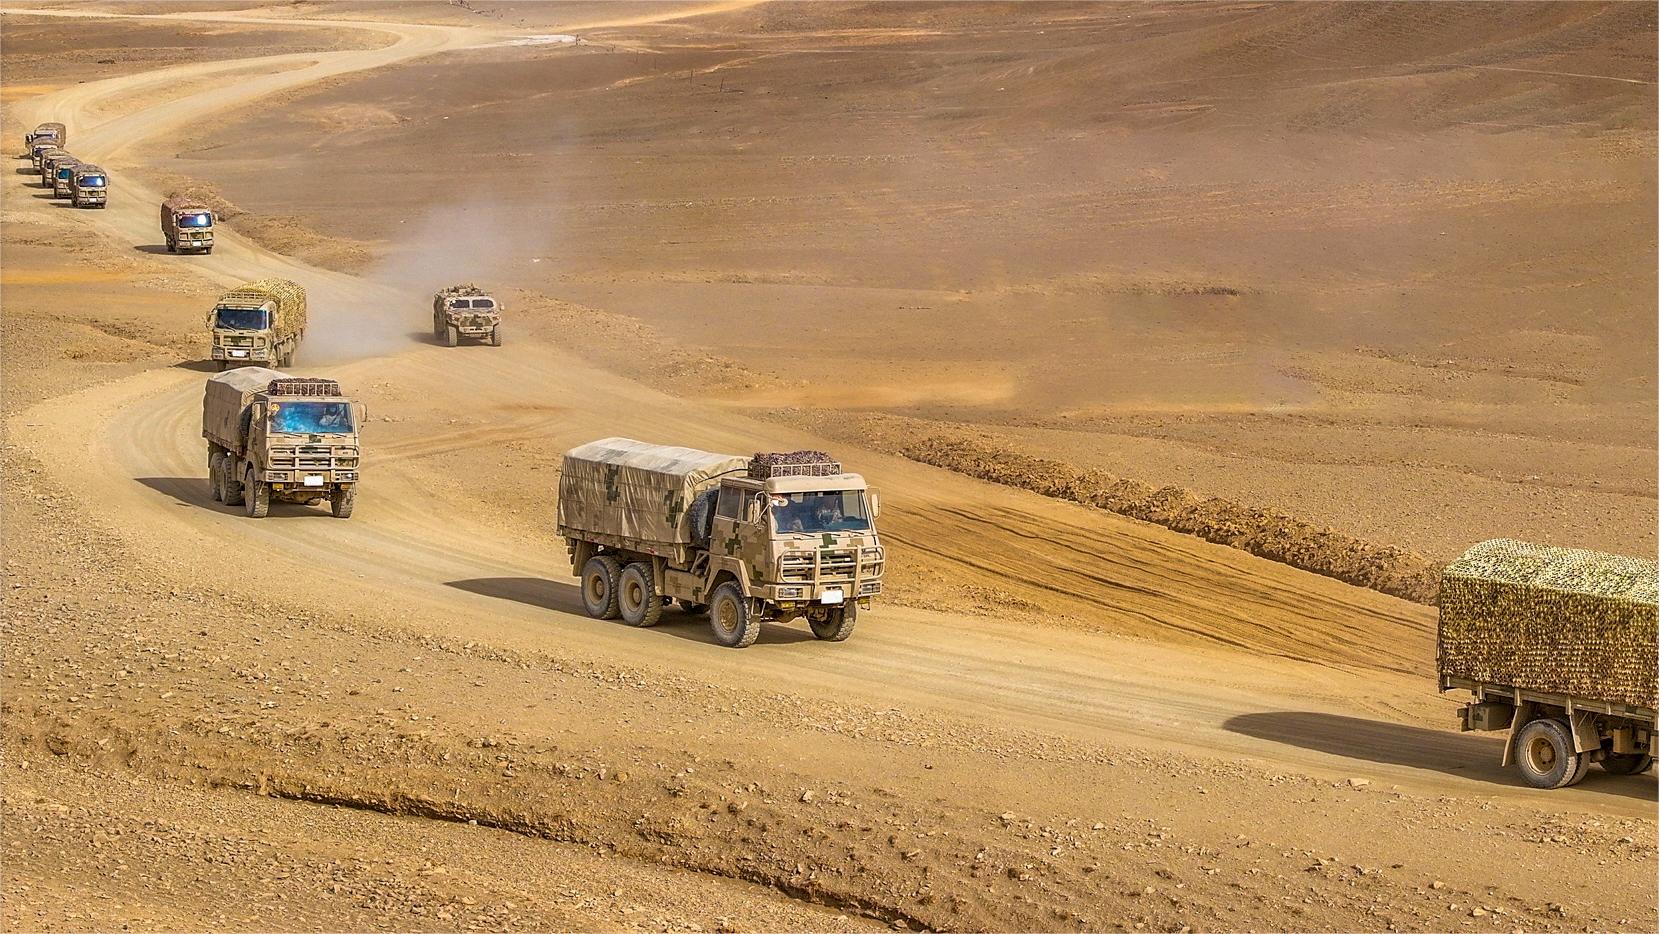 Military trucks maneuver through desert